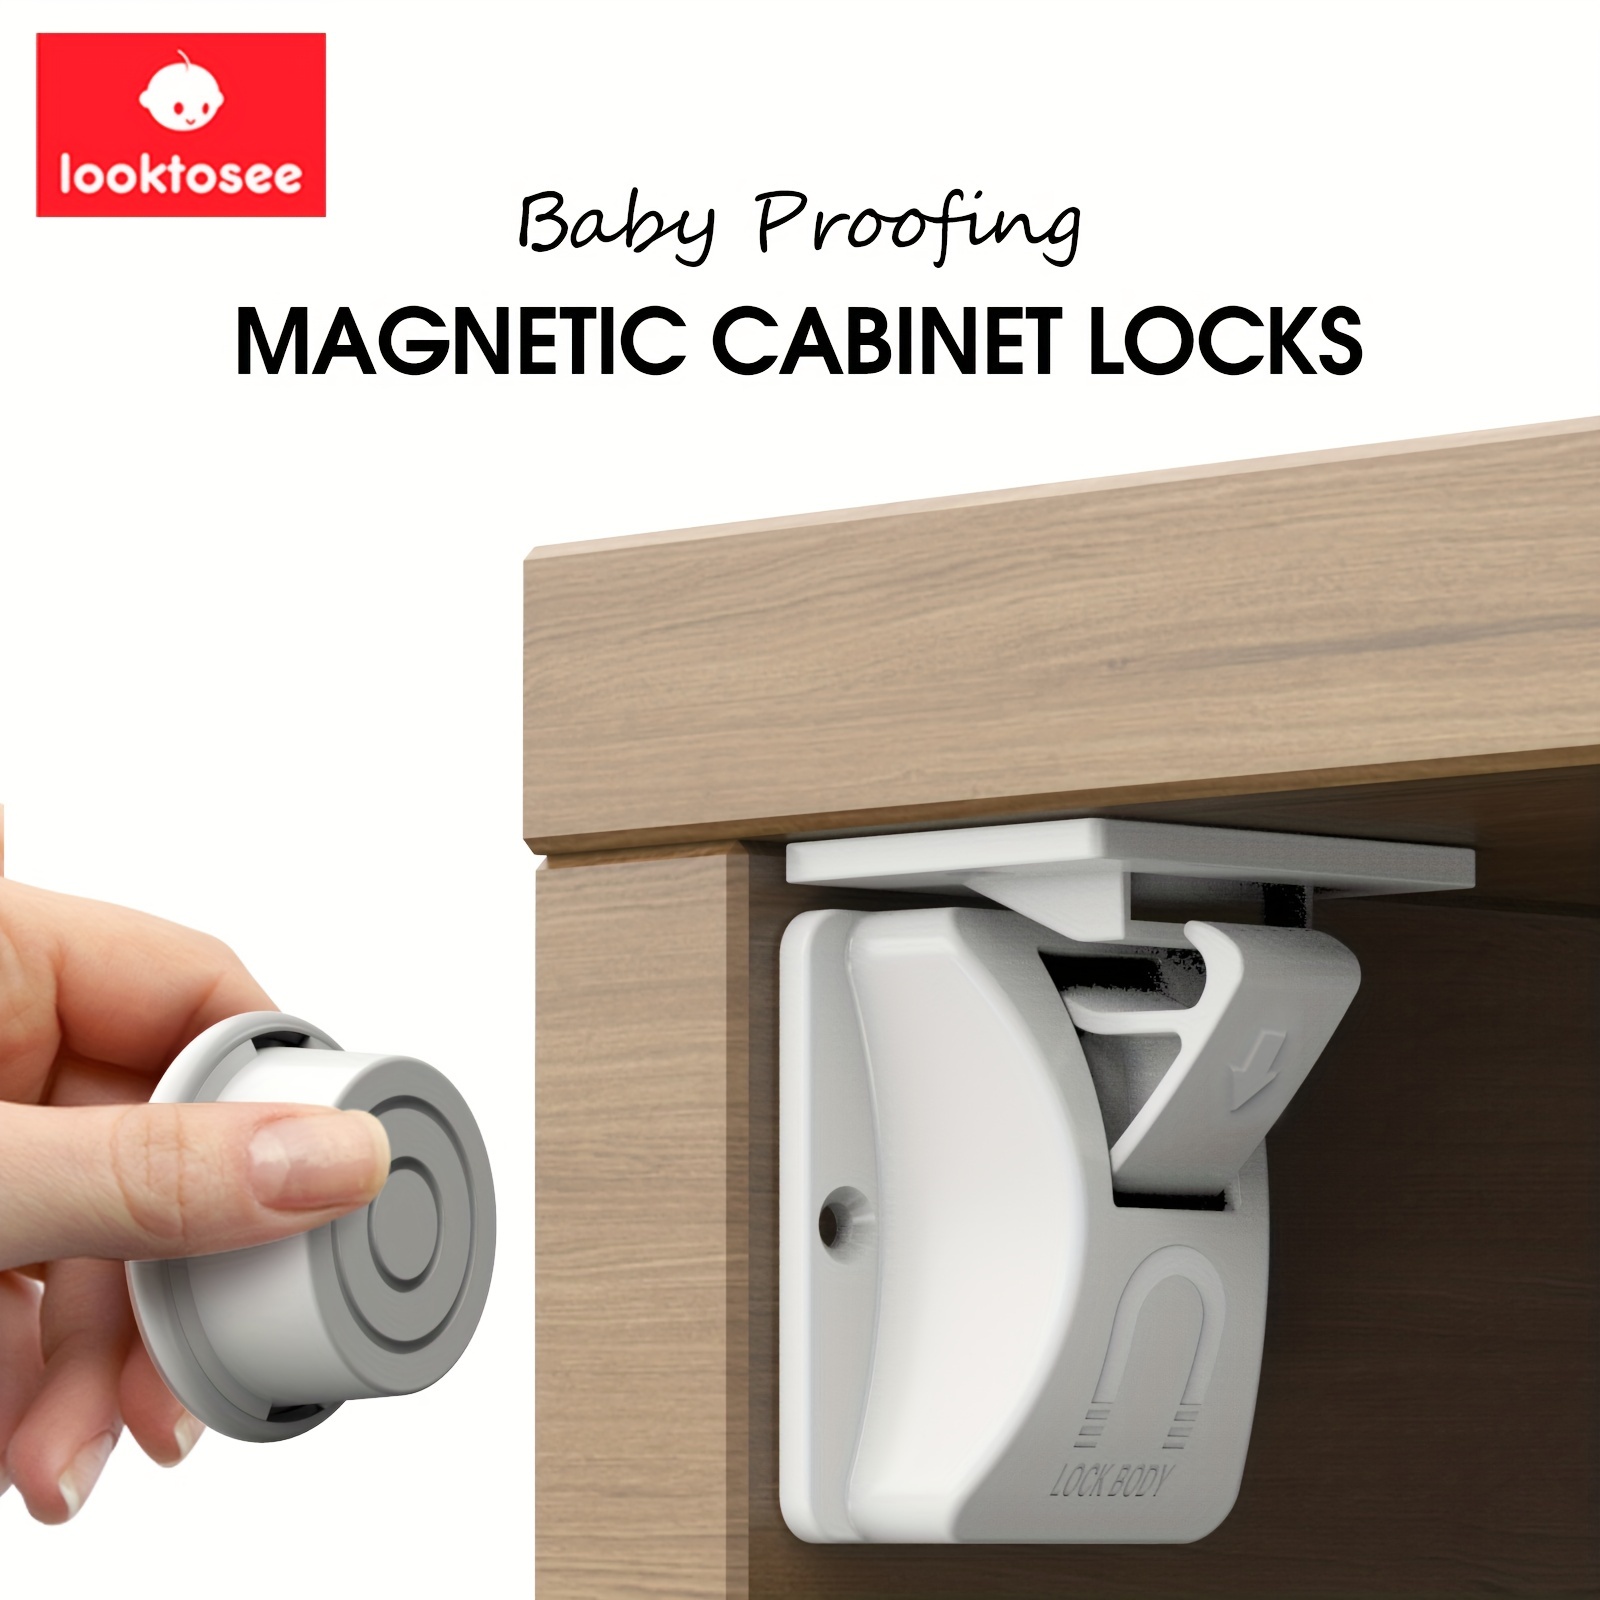 Cerraduras magnéticas a prueba de seguridad para niños y bebés, 4locks y 1  llaves, fácil instalación en segundos, cerraduras de seguridad para bebés  para gabinetes y cajones, sin tornillos o